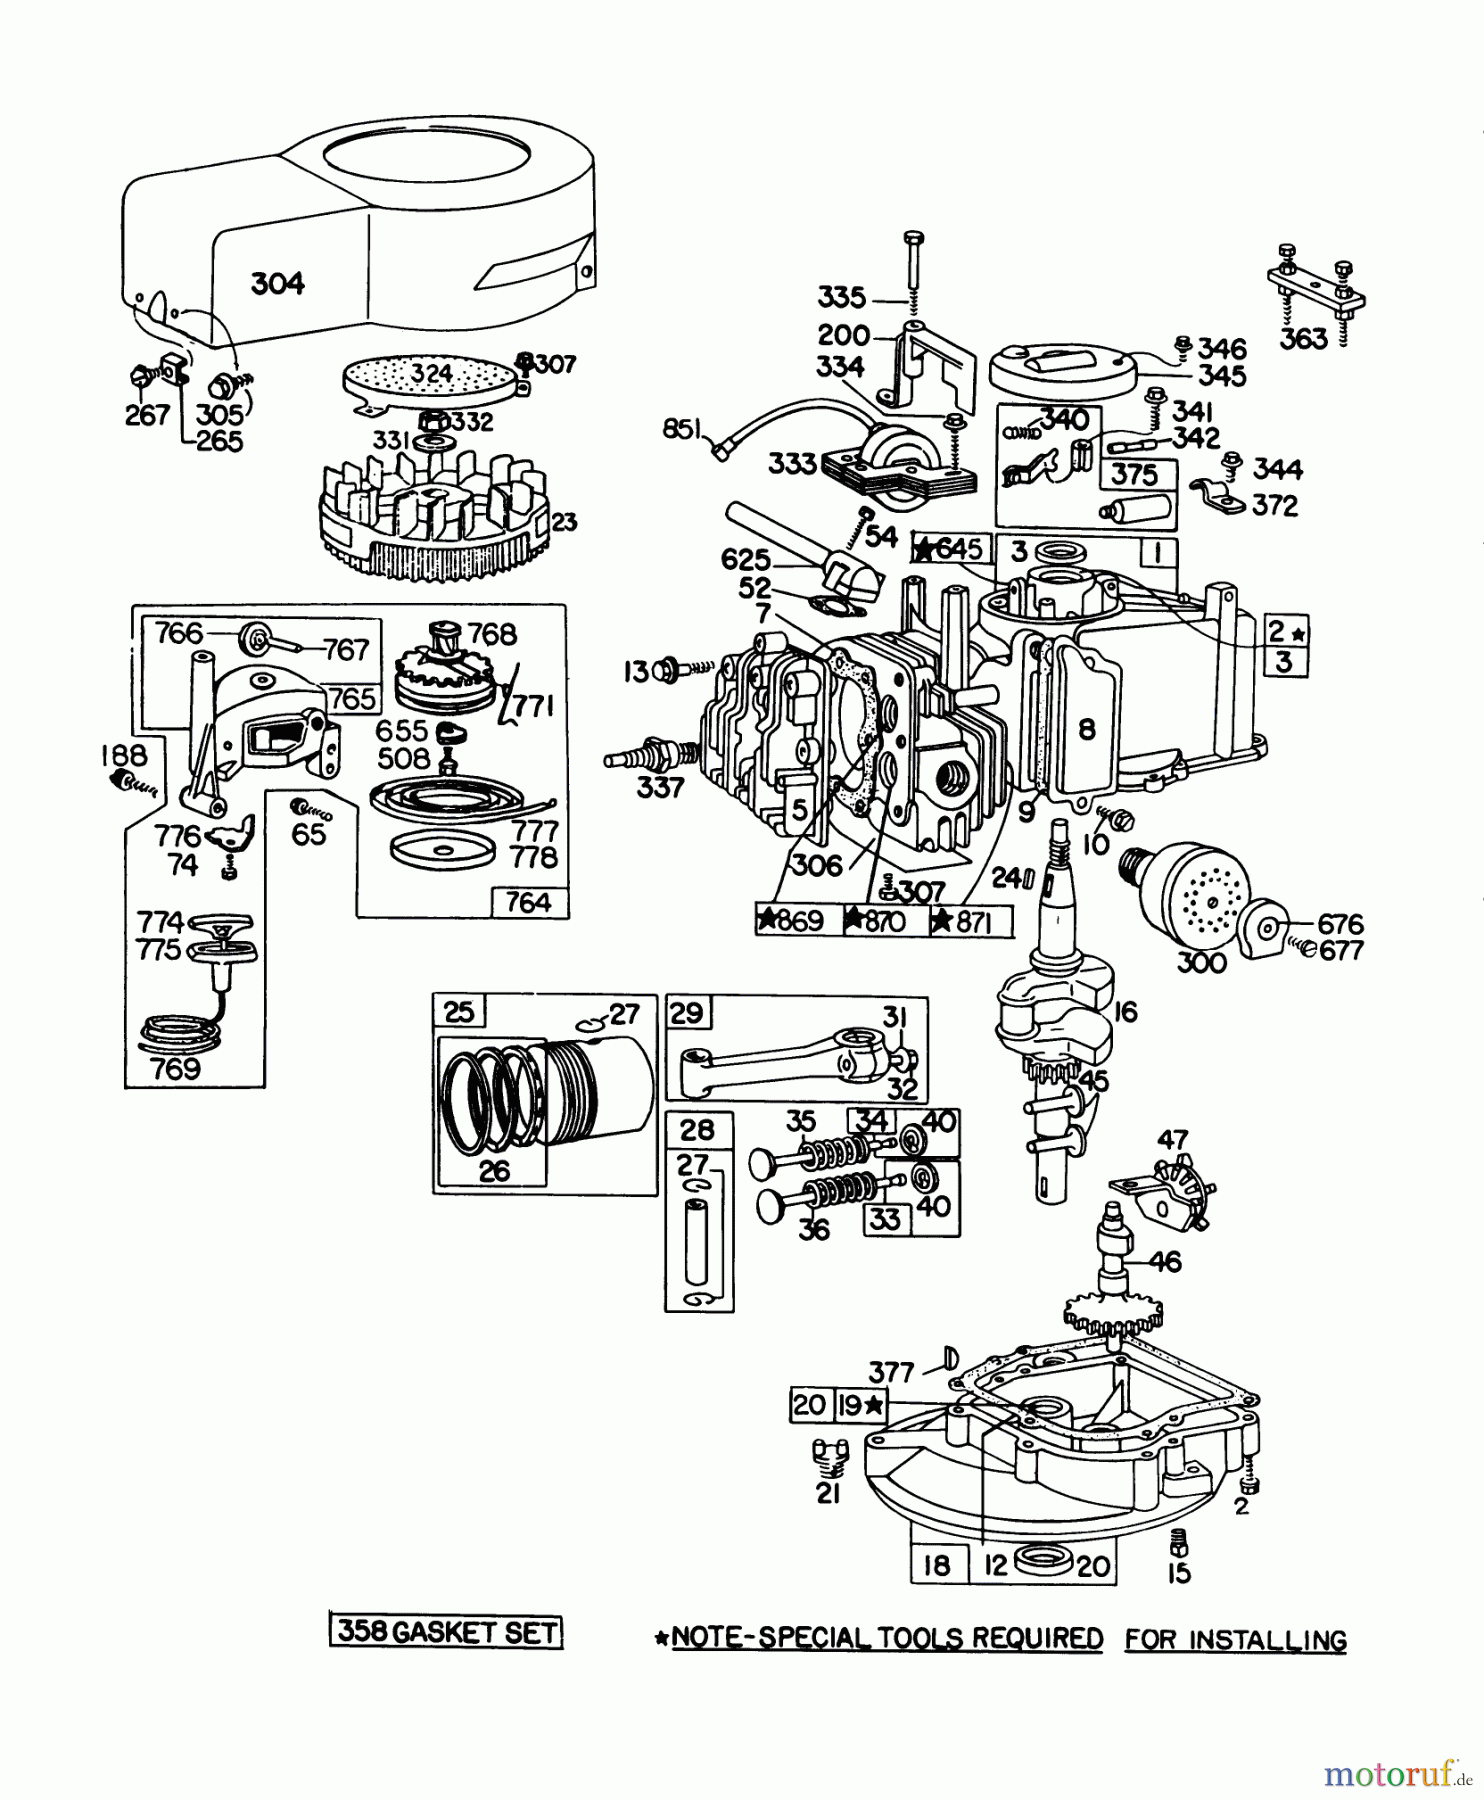  Toro Neu Mowers, Walk-Behind Seite 1 20698 - Toro Lawnmower, 1978 (8000001-8999999) ENGINE BRIGGS & STRATTON MODEL NO. 92908-1934-01